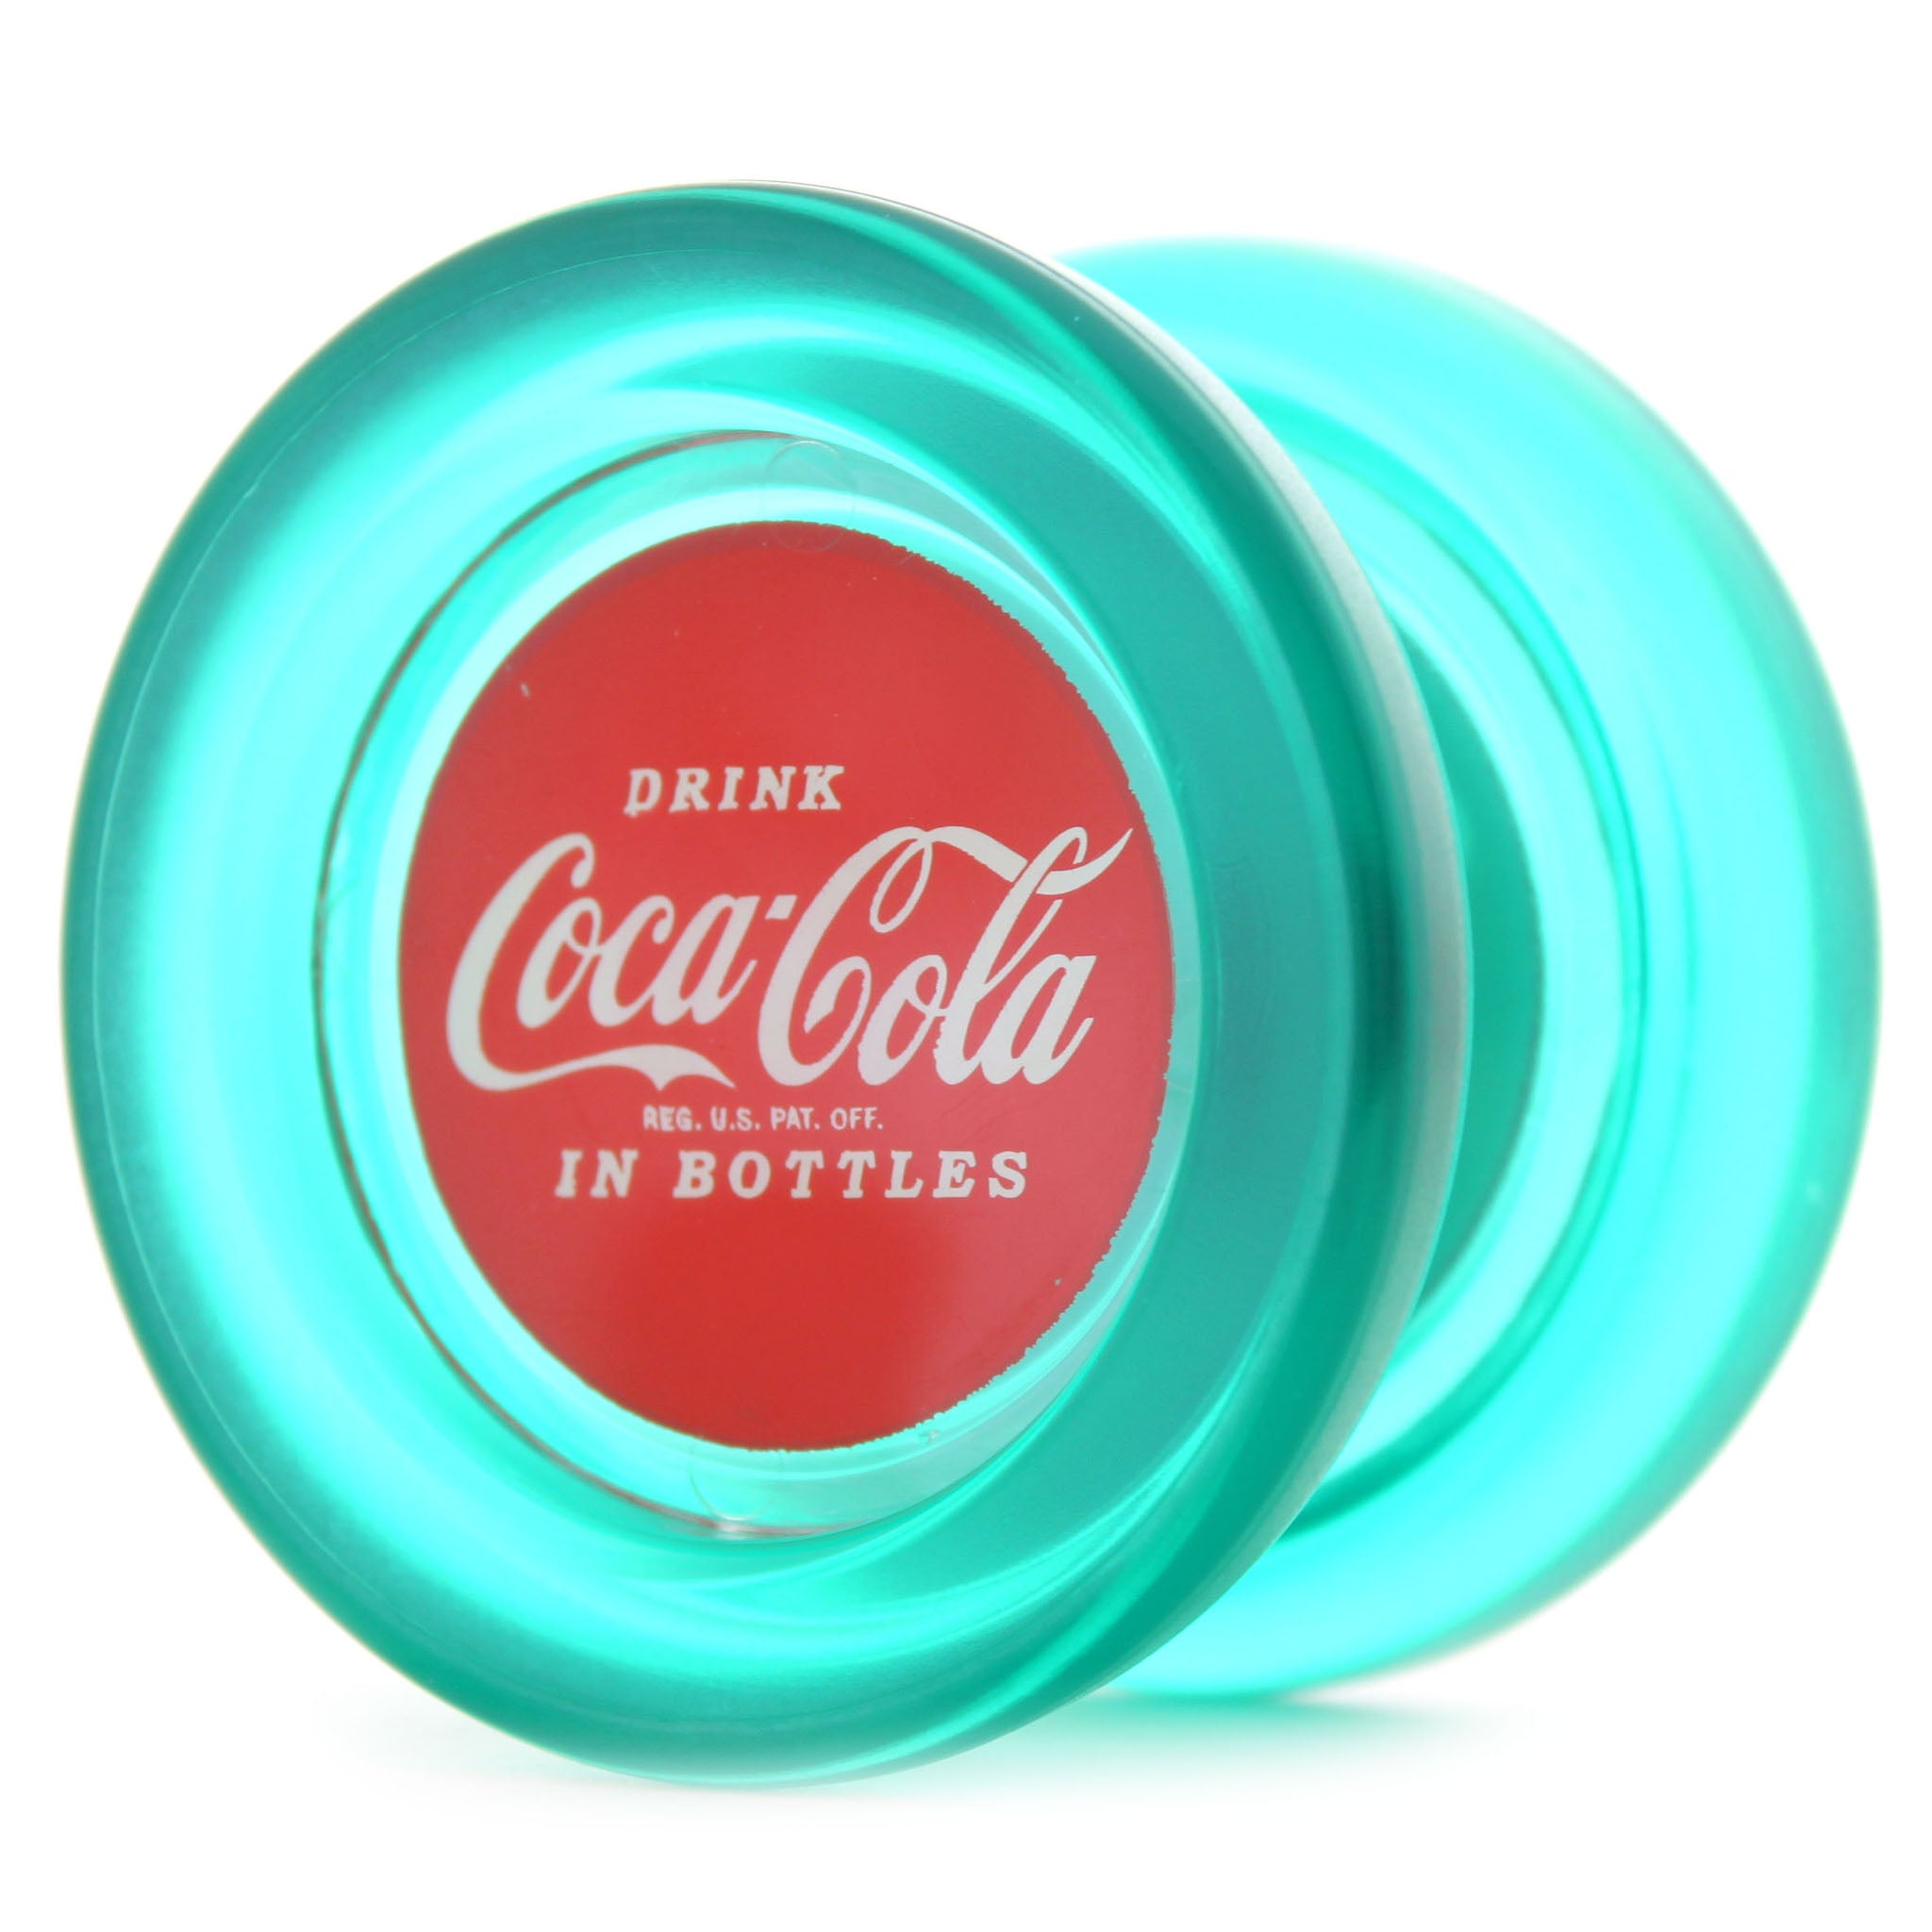 ヨーヨー コカコーラ 復刻デザインボトル 49個セット 新品未使用